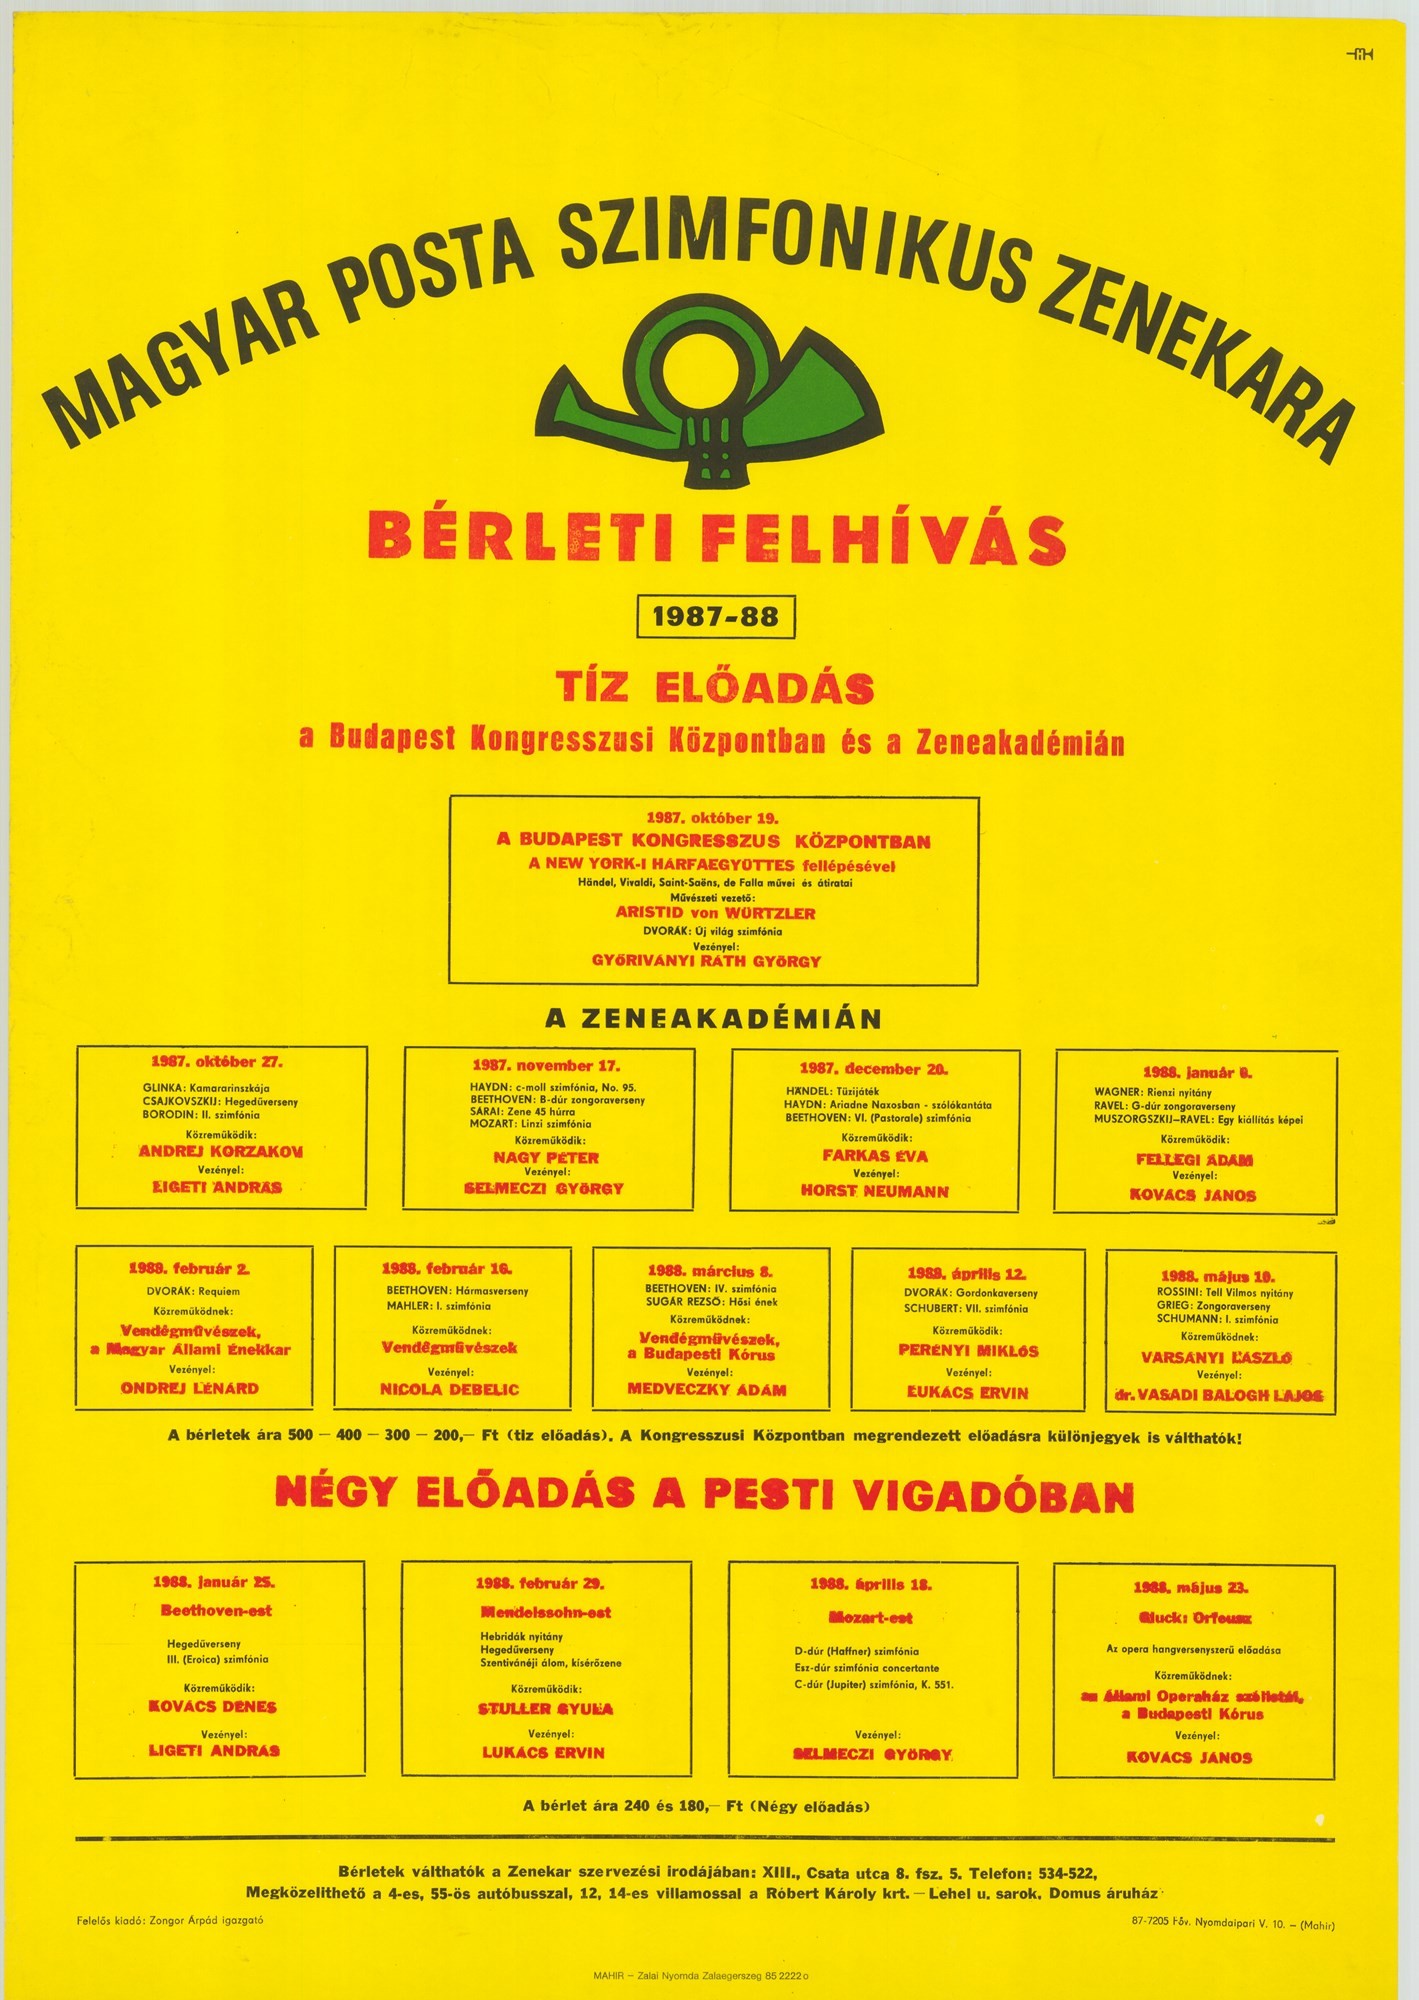 Plakát - Postás Szimfonikus Zenekar bérleti felhívás, 1987-1988 (Postamúzeum CC BY-NC-SA)